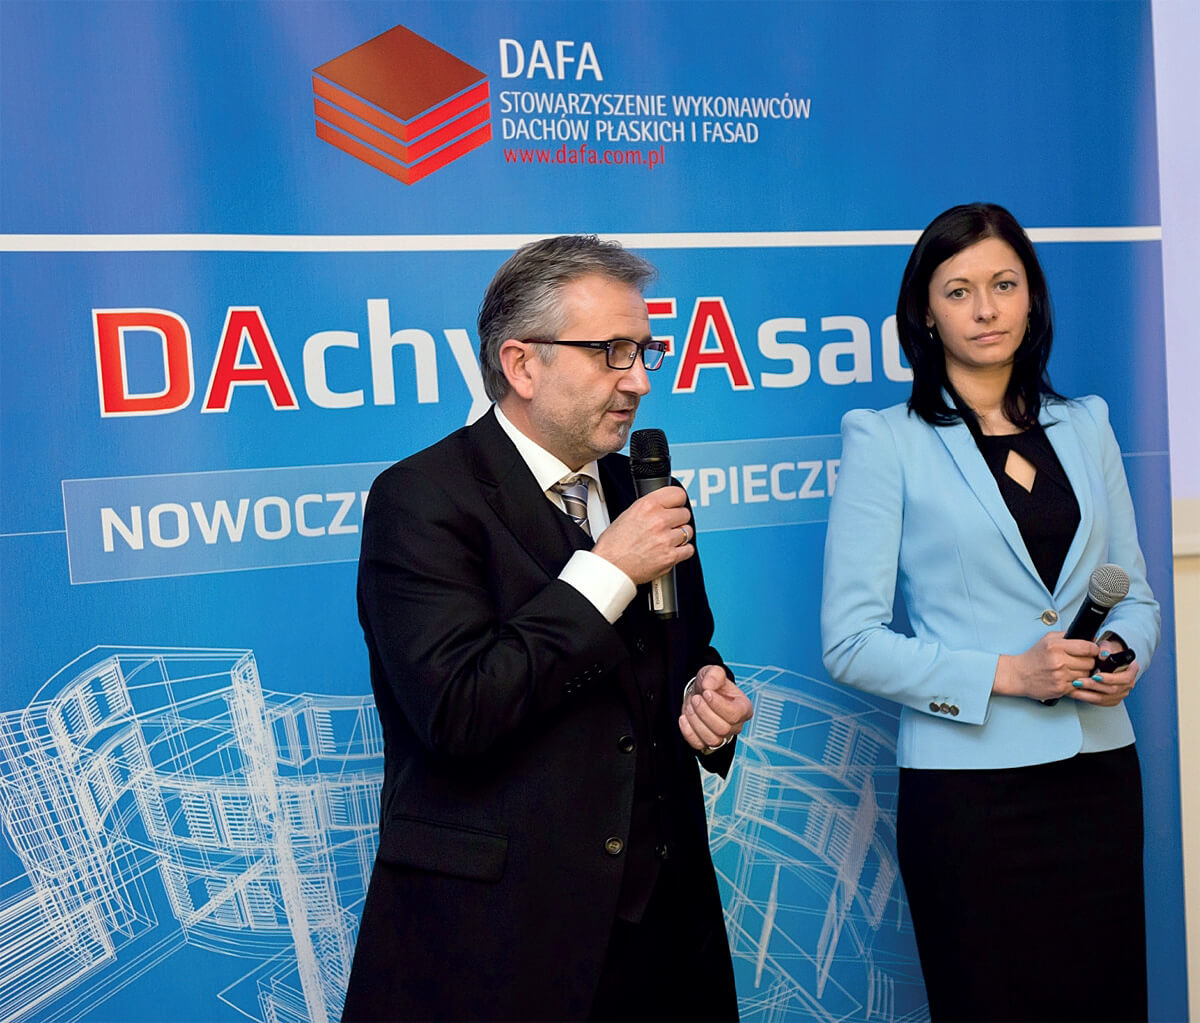 Nowoczesność i bezpieczeństwomottem IV Konferencji Stowarzyszenia DAFA